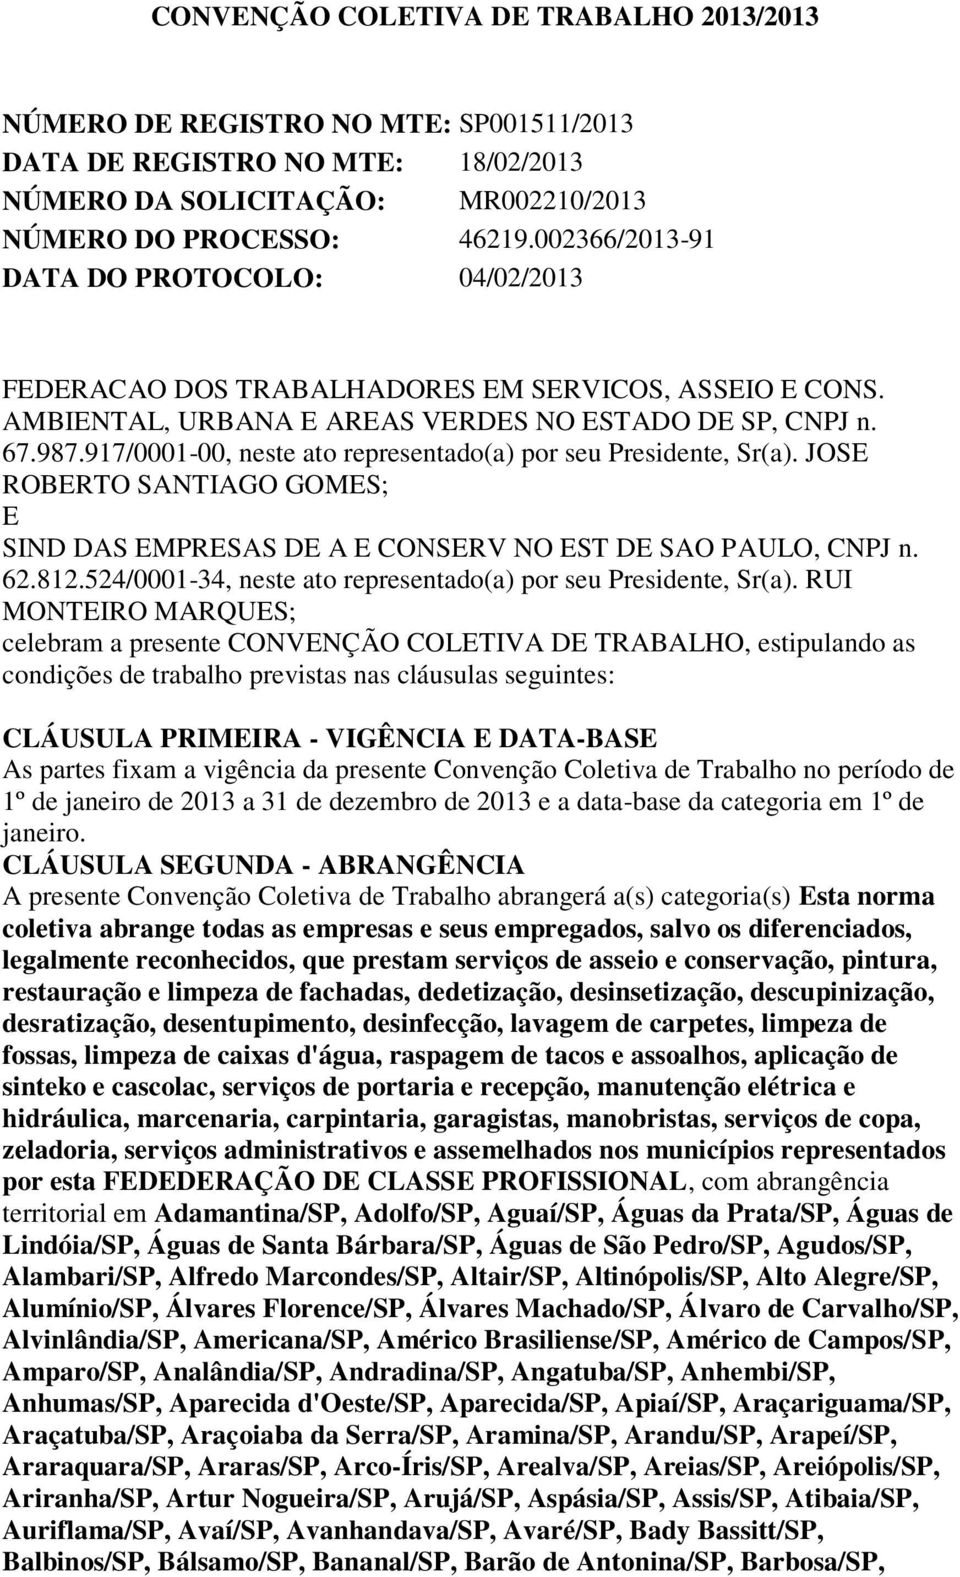 917/0001-00, neste ato representado(a) por seu Presidente, Sr(a). JOSE ROBERTO SANTIAGO GOMES; E SIND DAS EMPRESAS DE A E CONSERV NO EST DE SAO PAULO, CNPJ n. 62.812.